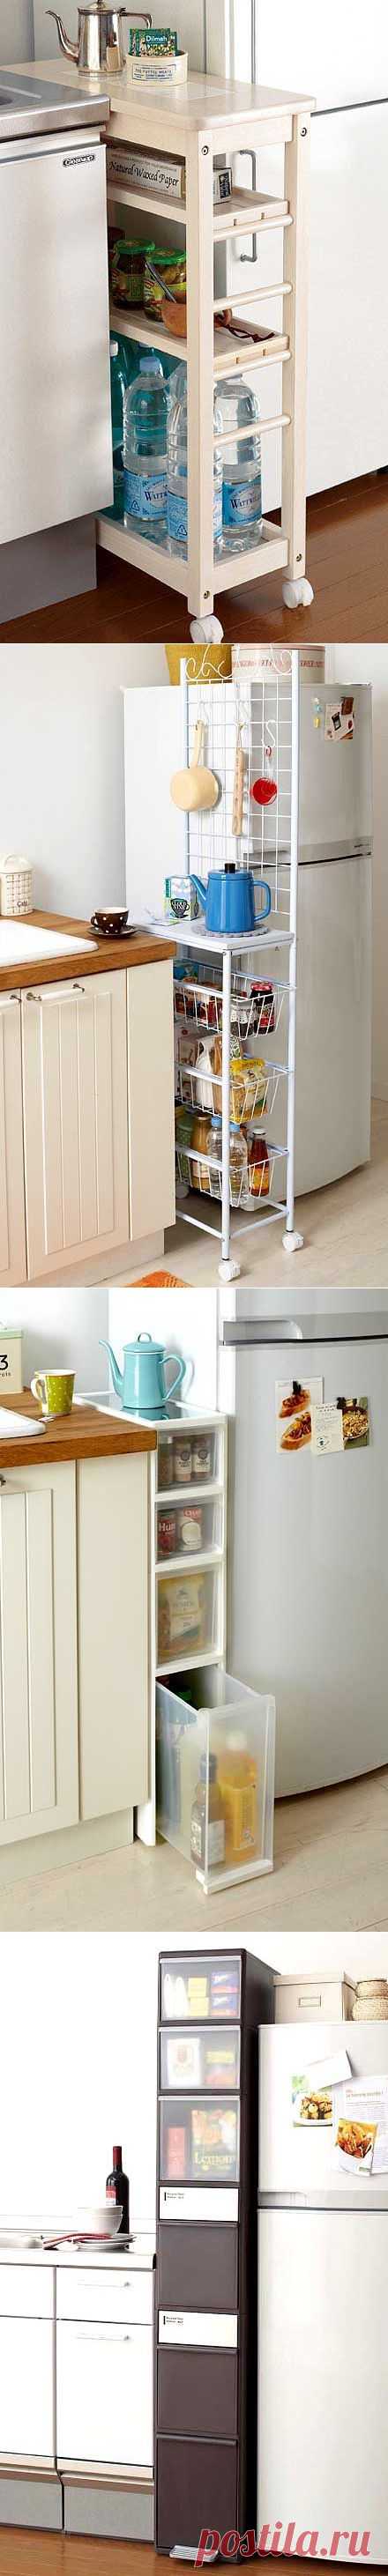 Идеи для маленькой кухни: используем место у холодильника - Учимся Делать Все Сами